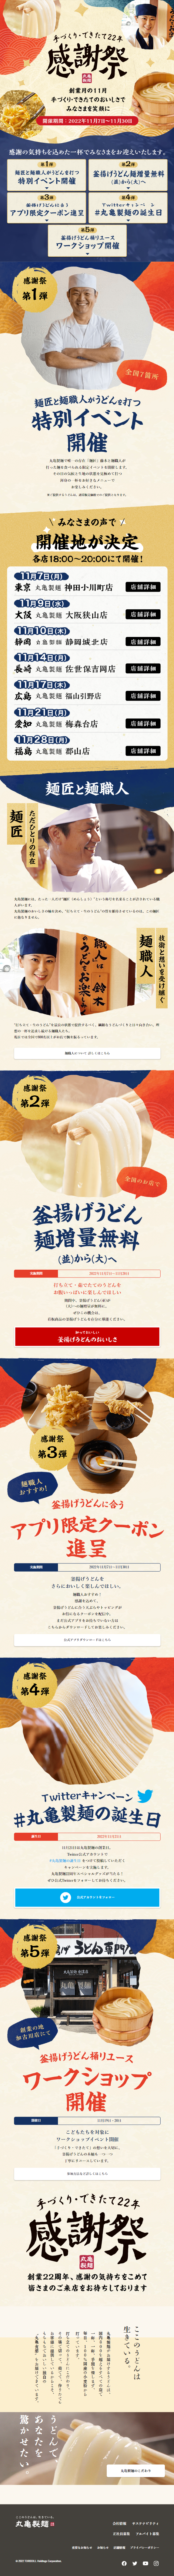 丸亀製麺感謝祭_sp_1